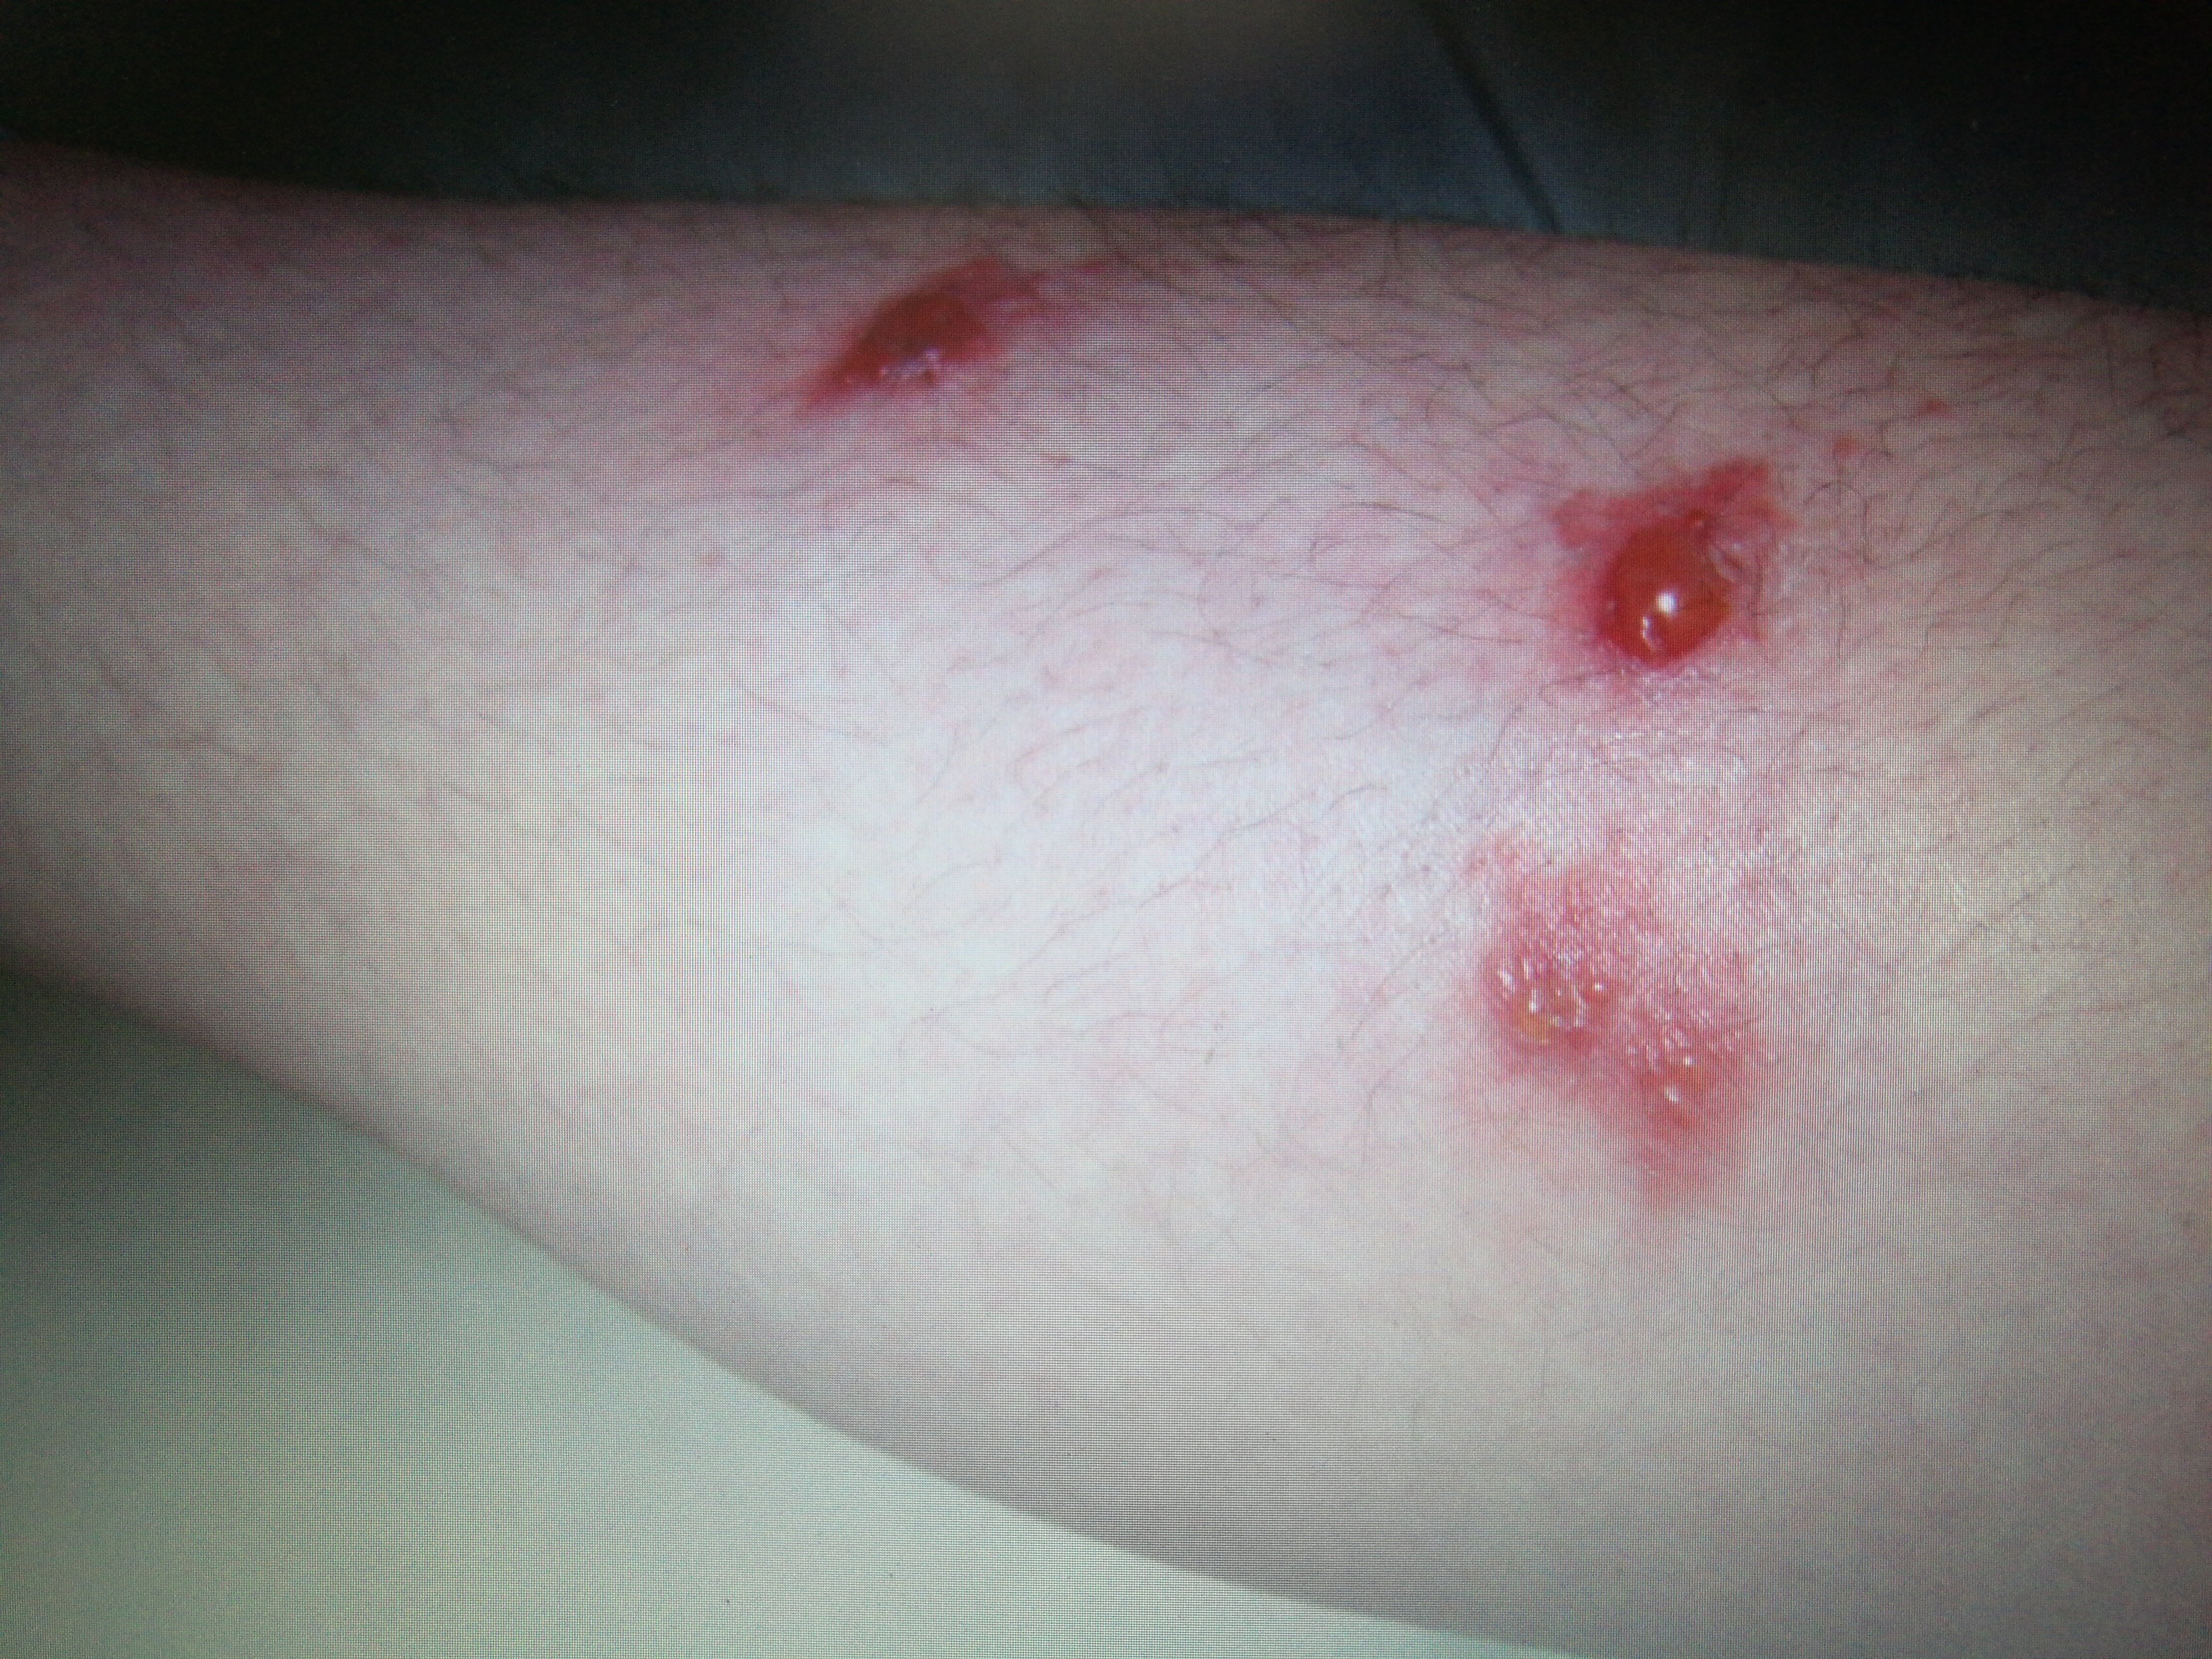 小腿散在的红色丘疹,丘疱疹.